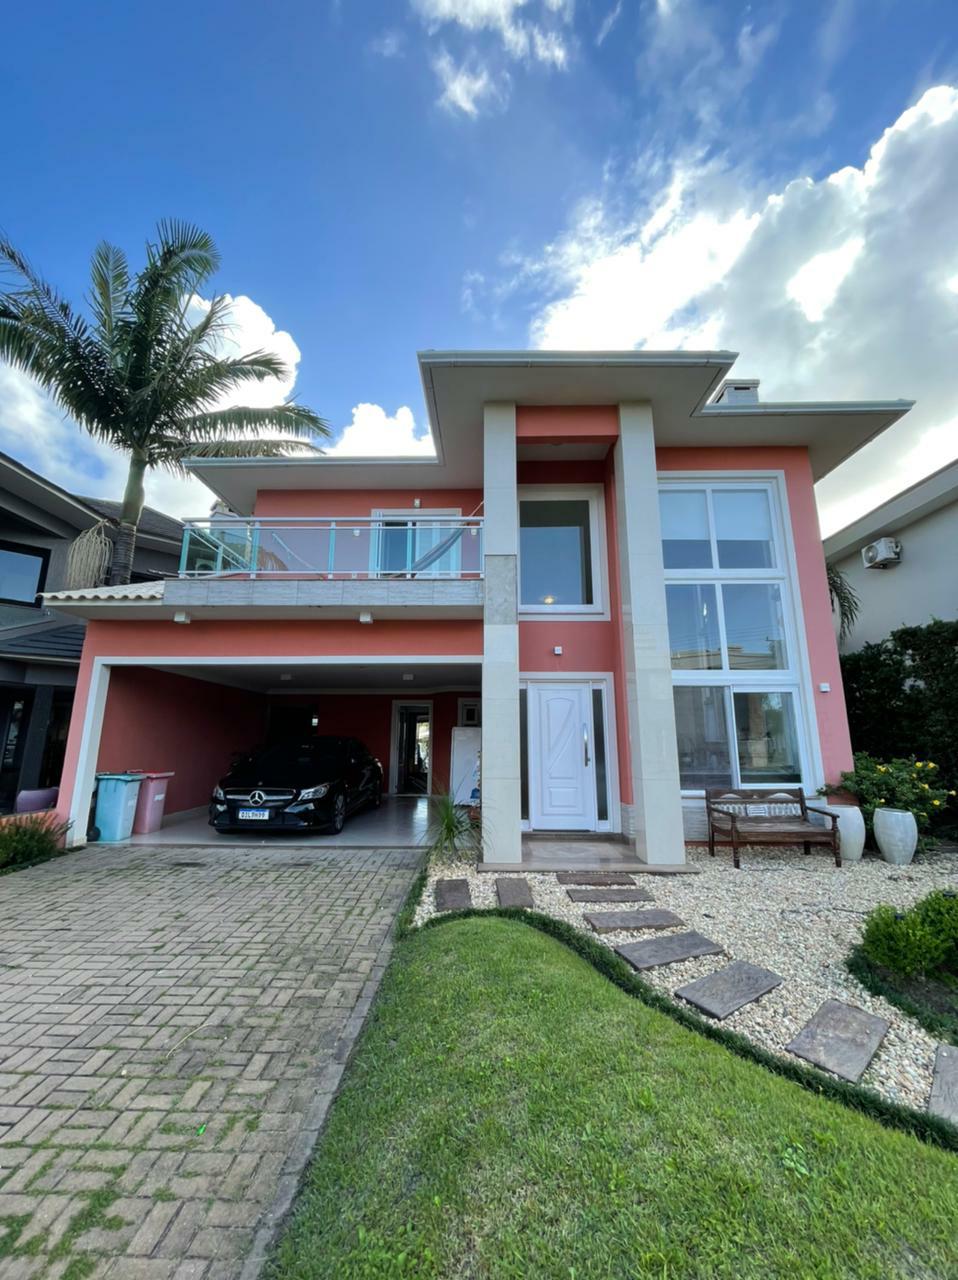 Casa em Condomínio 5 dormitórios para venda, Zona Nova em Capão da Canoa | Ref.: 167